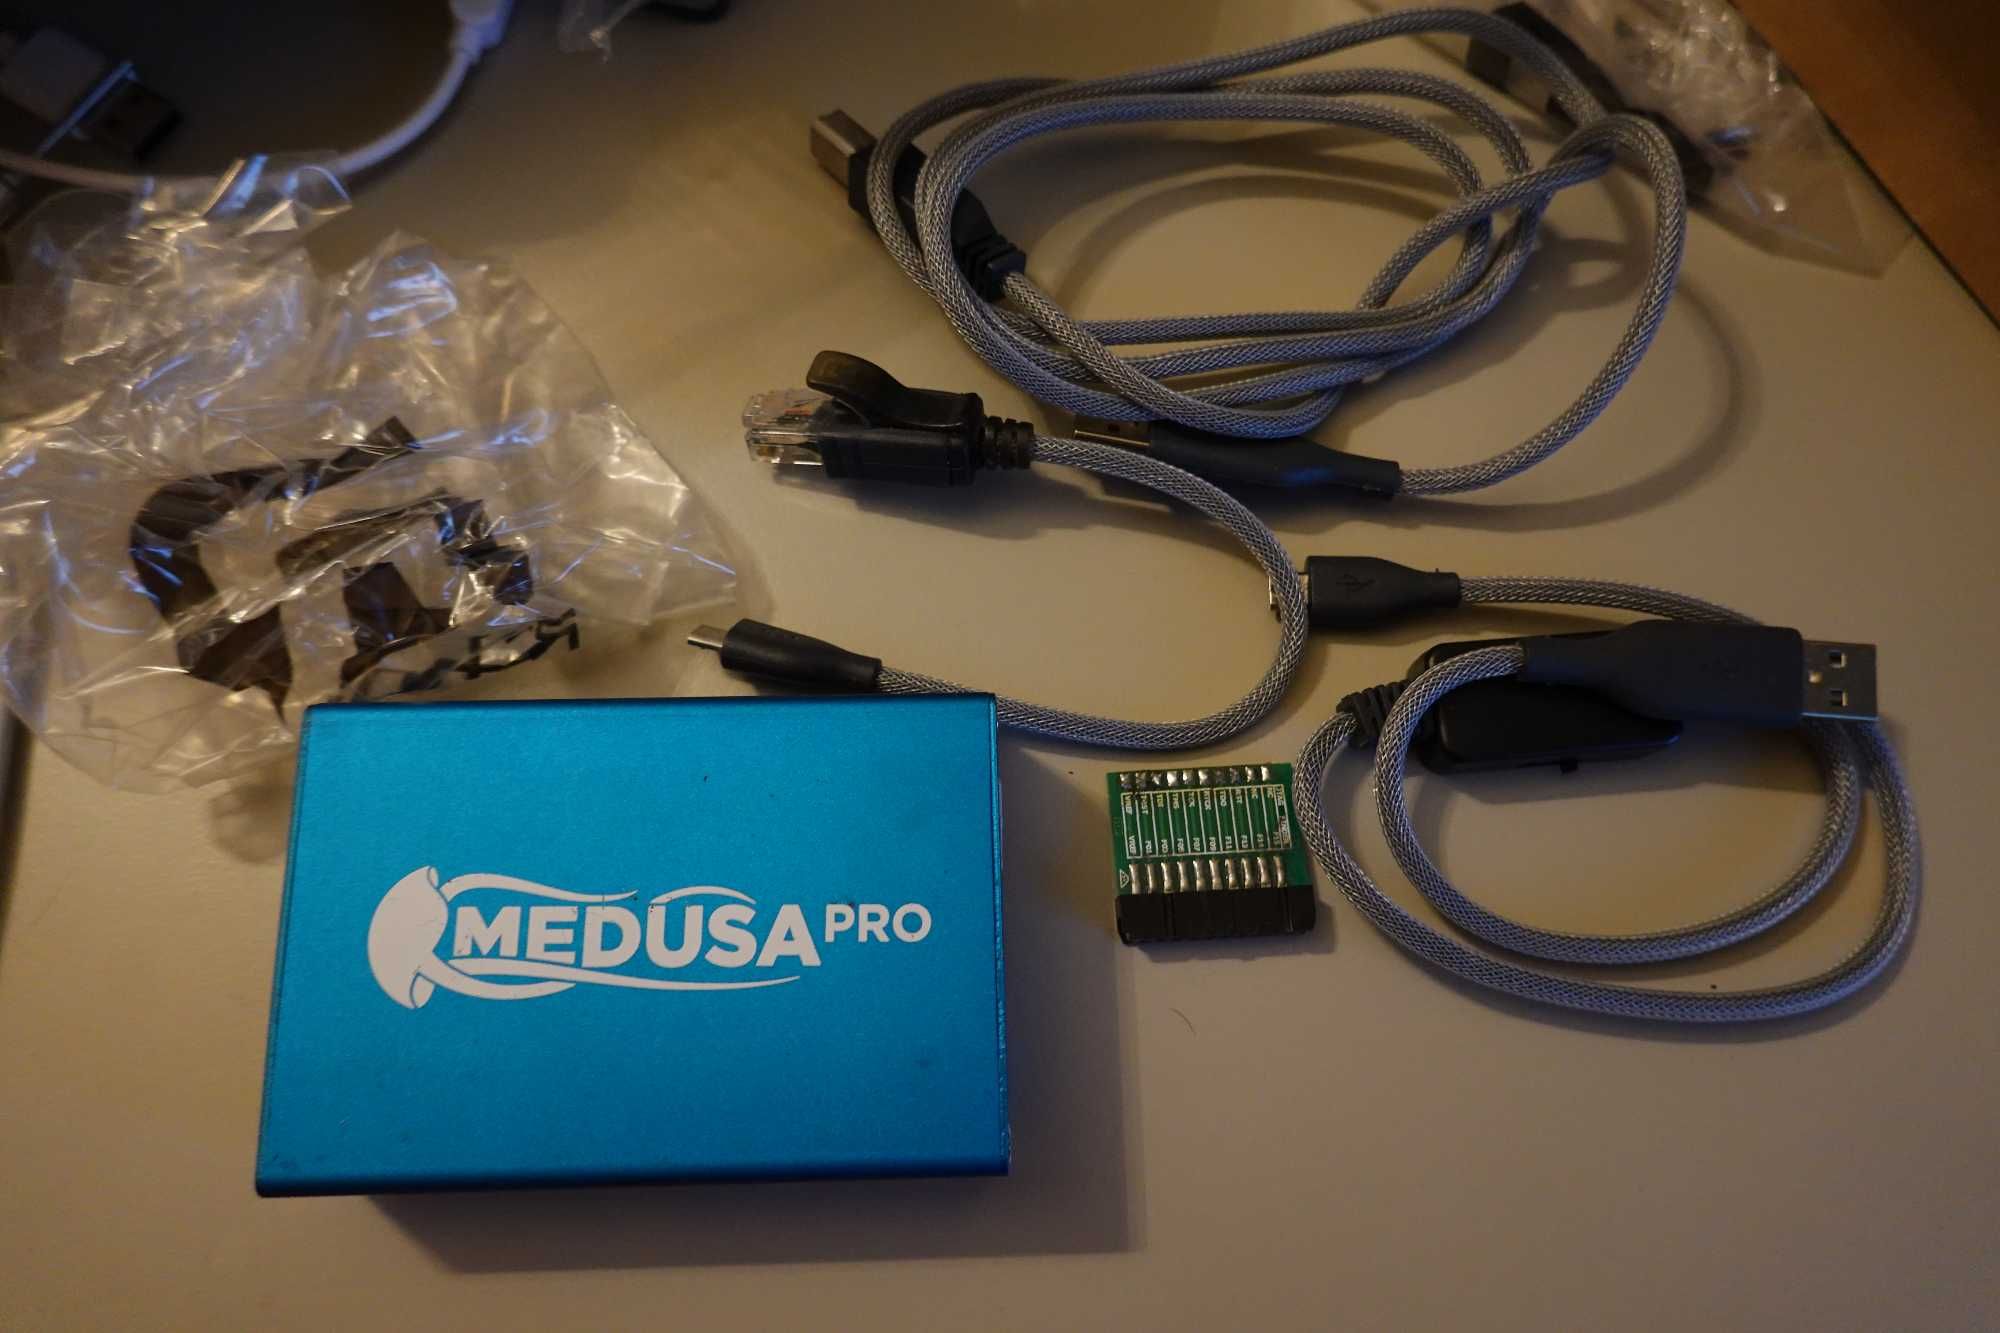 Medua Pro Box cu Activare LG foarte putin folosit. Sigilii intacte.